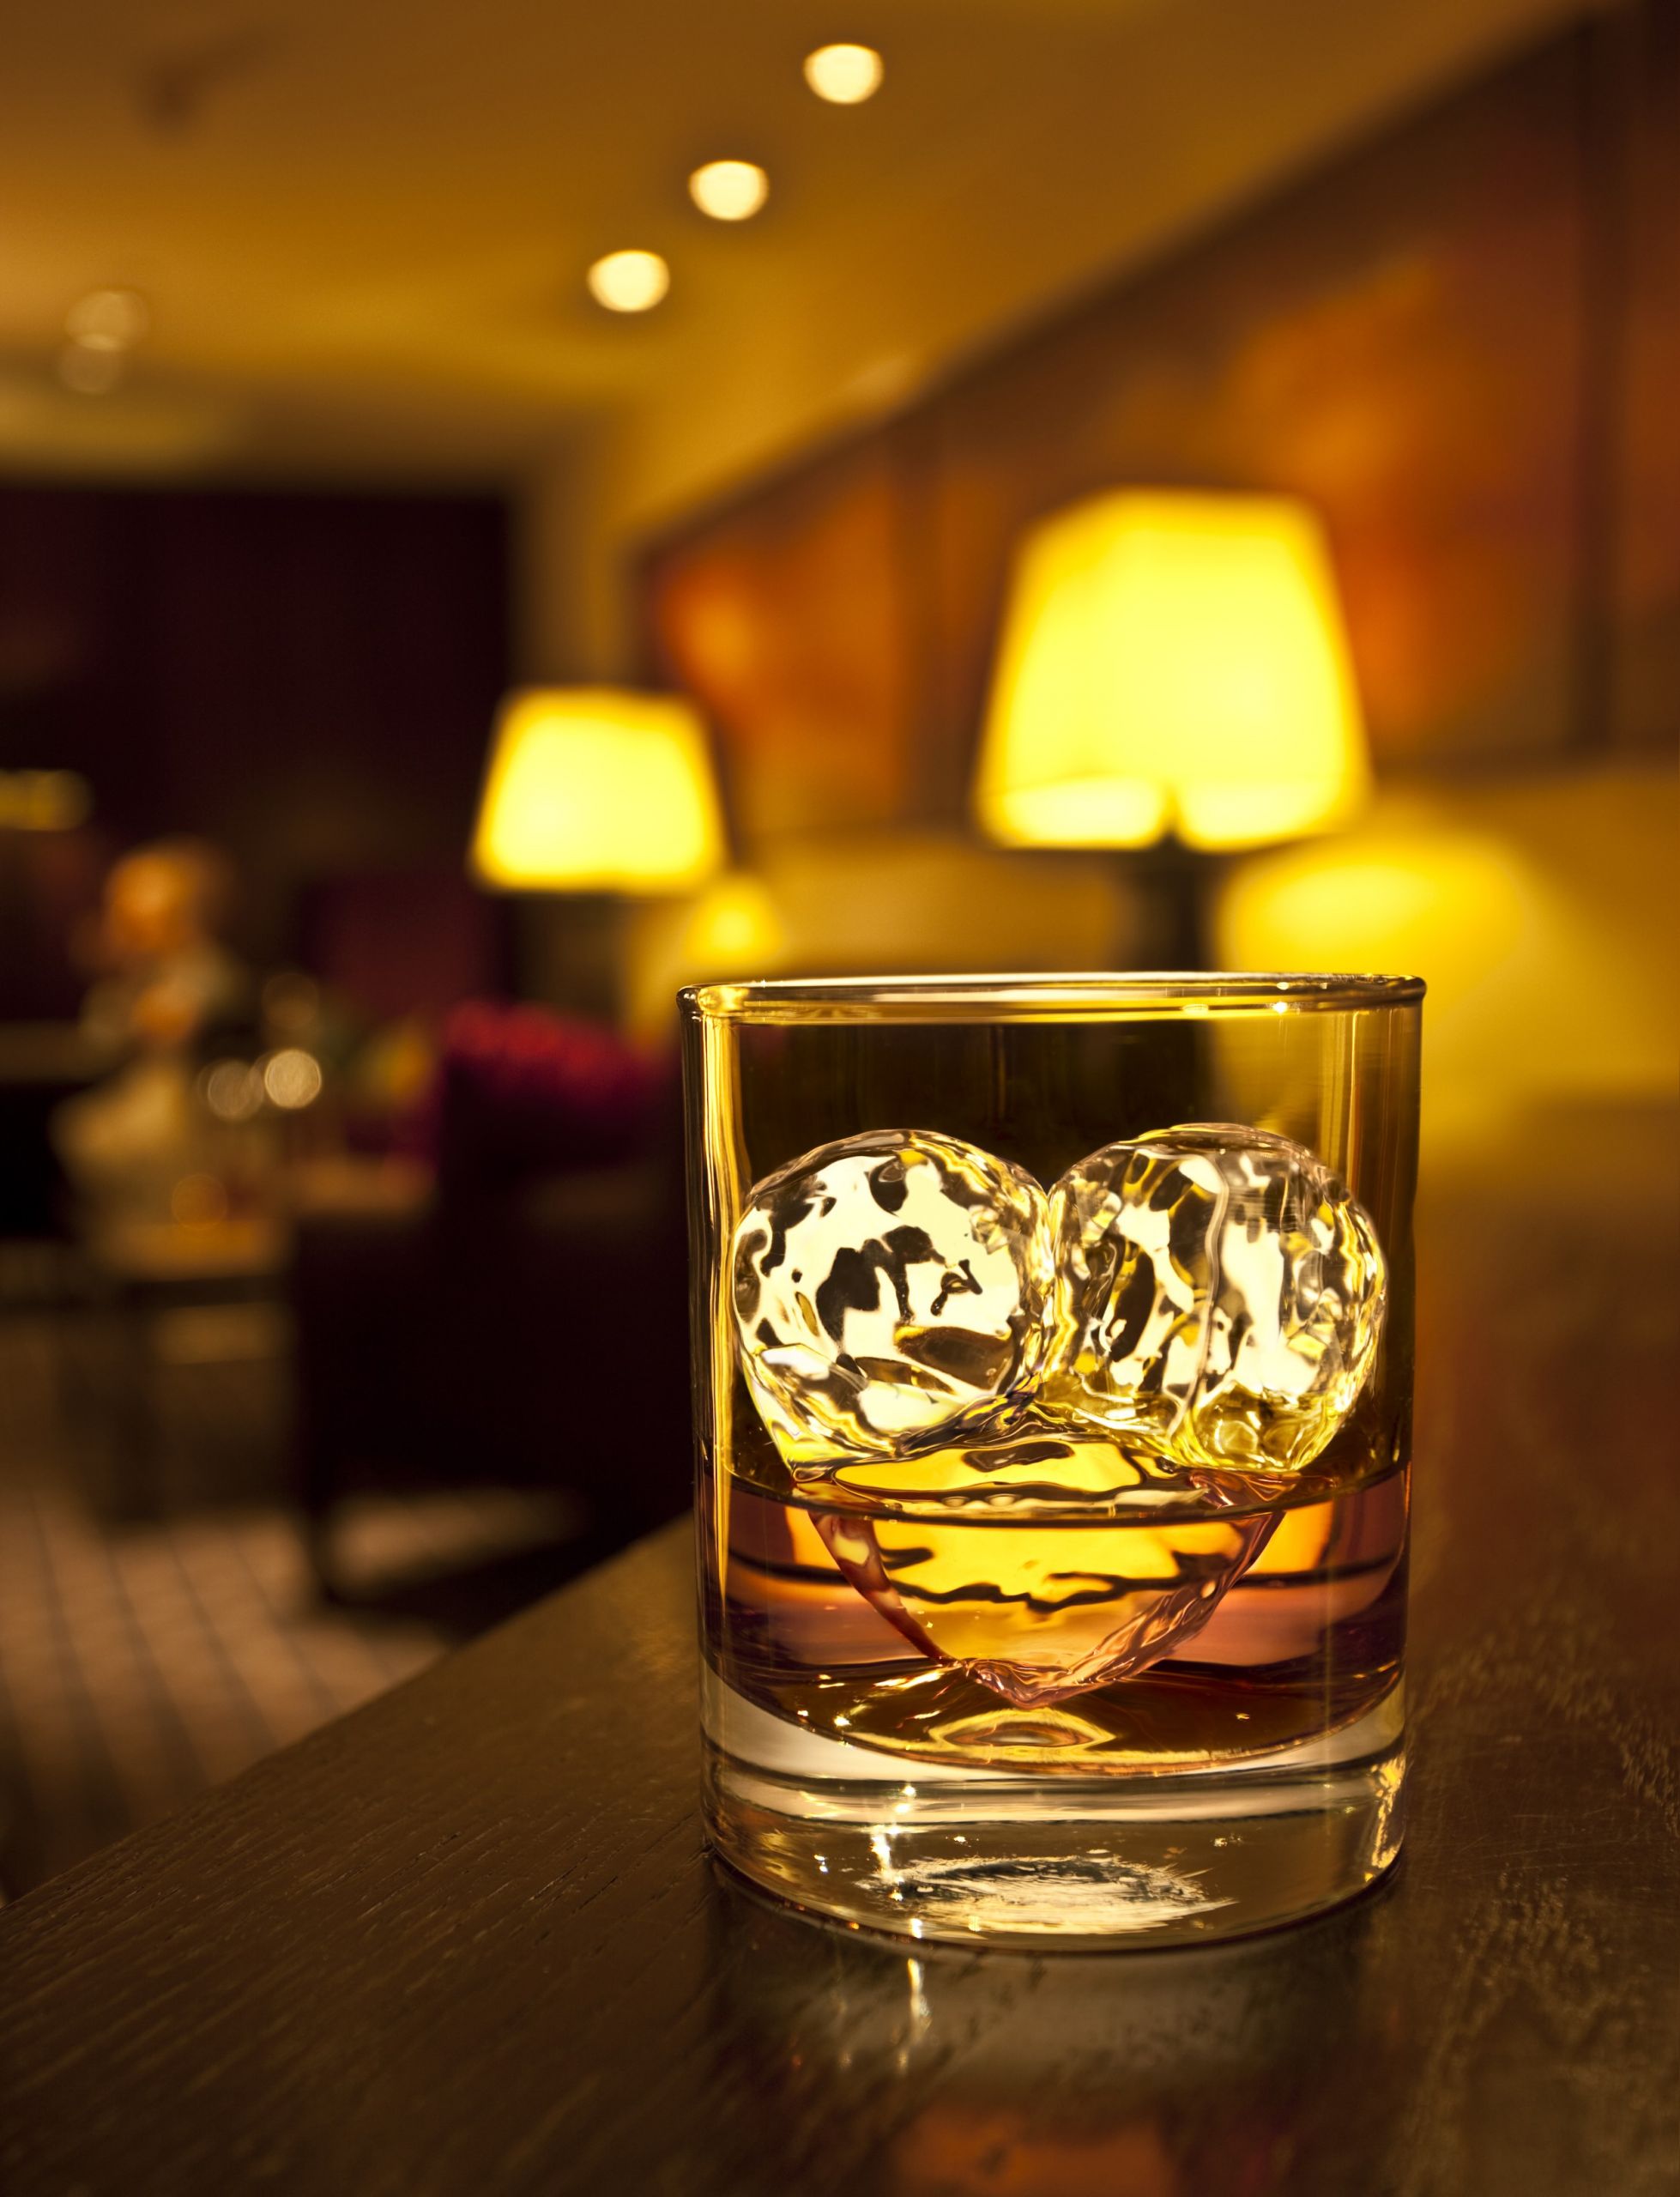 צילום כוס וויסקי עם קרח בצורת לב קמפיין למלונות דן של באומן בר ריבנאי צילום סטודיו רייס צלמים